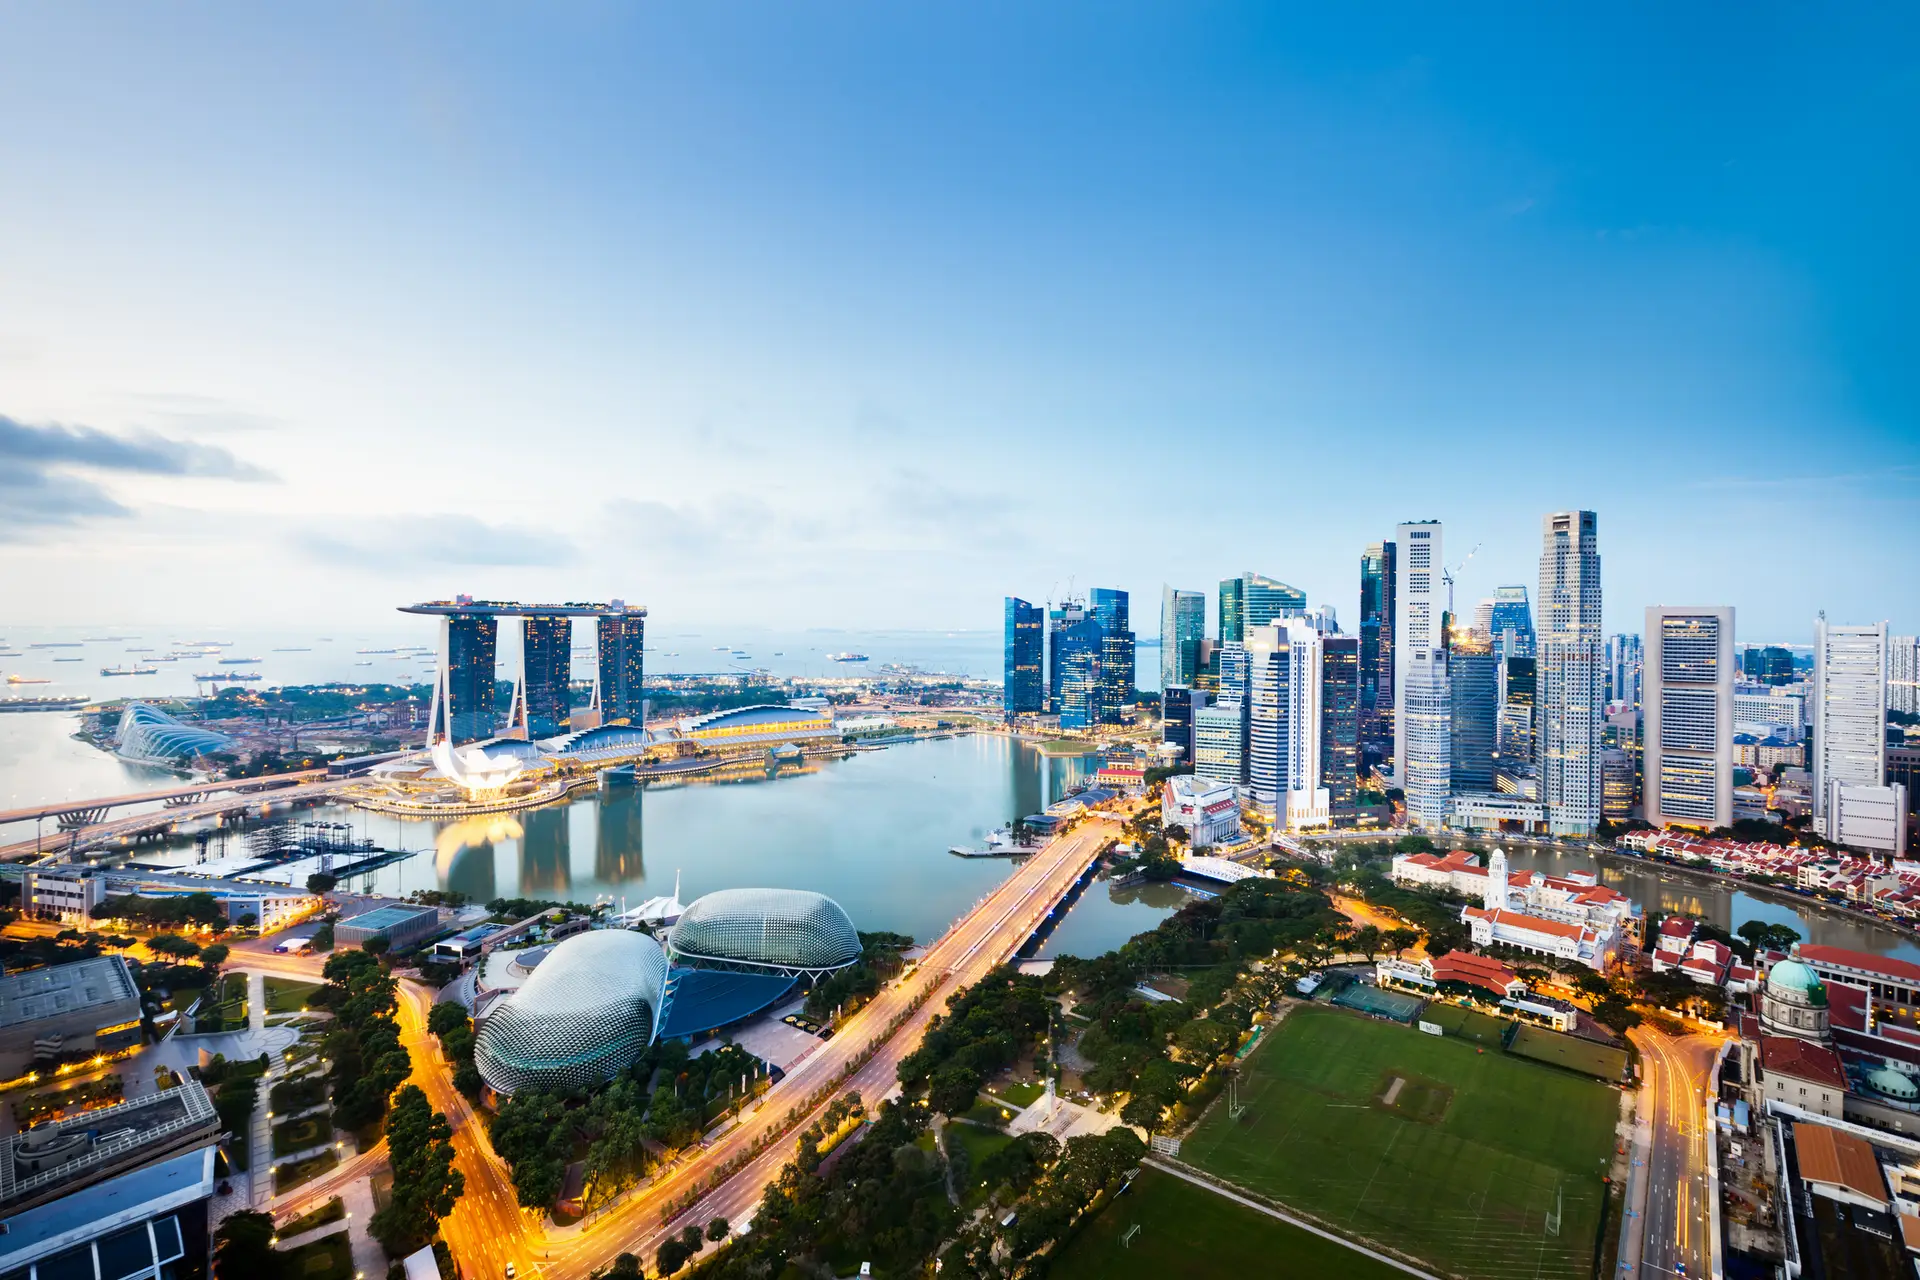 Singapura ultrapassa Hong Kong como principal centro financeiro da Ásia